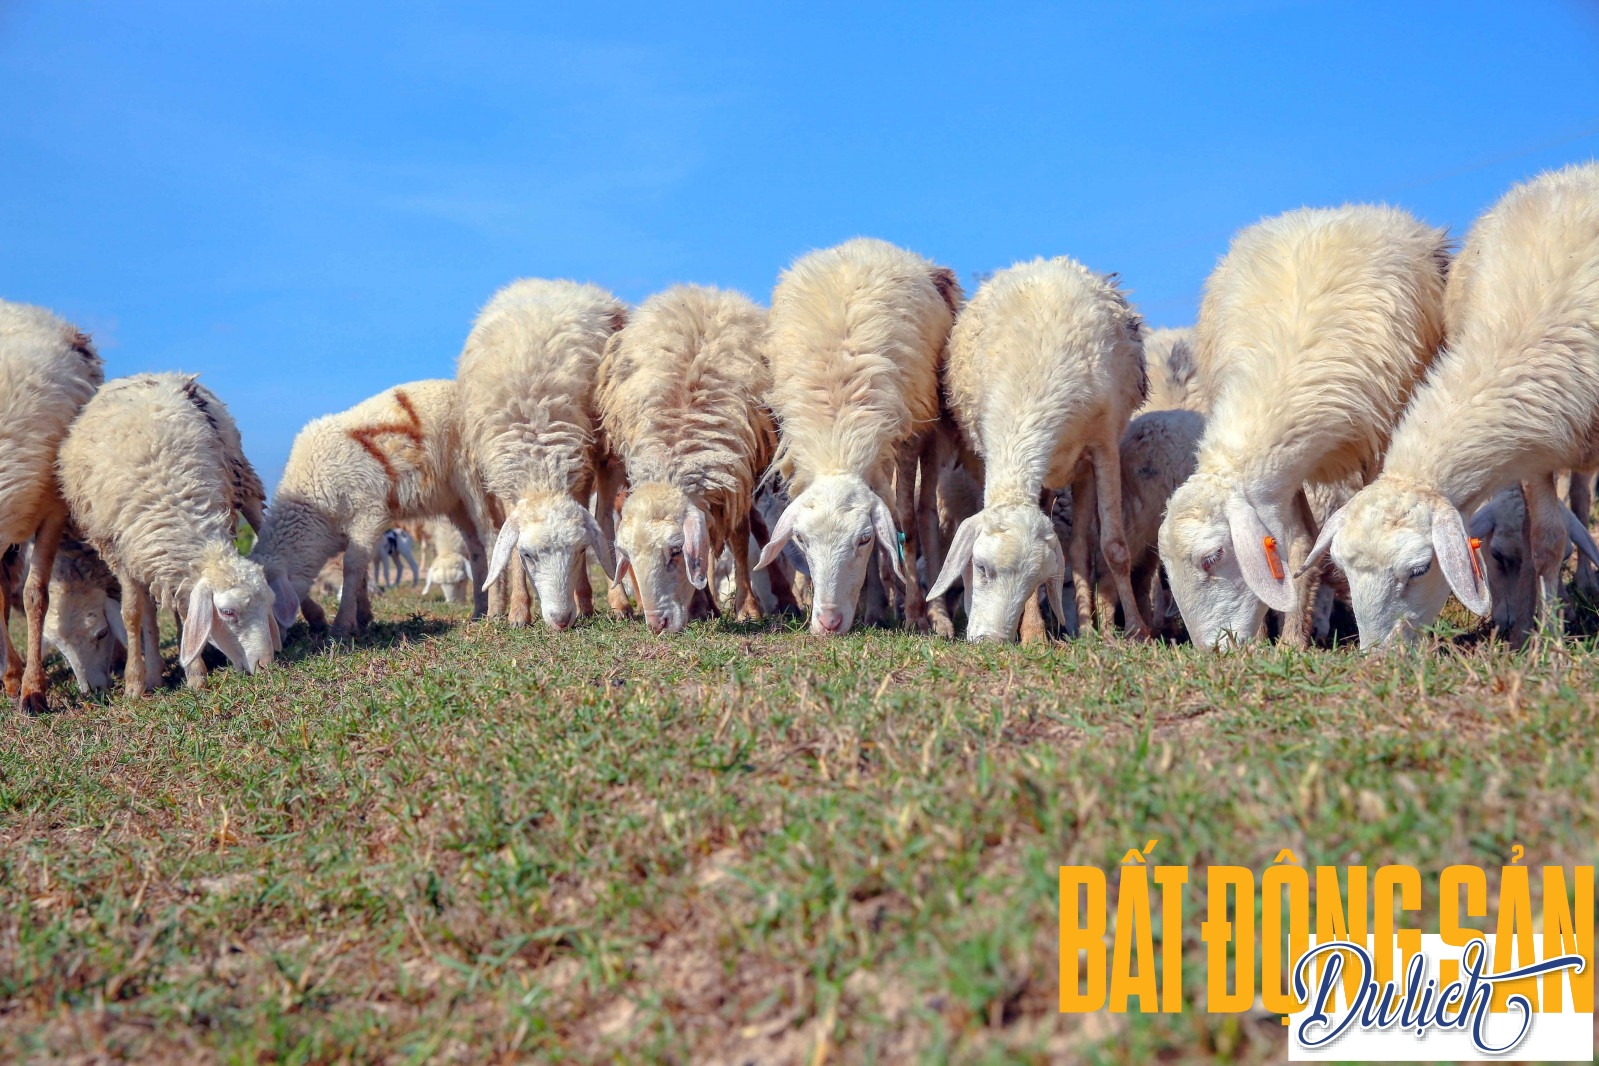 Nơi ăn của cừu có khi cách trại nuôi cả chục kilomet và những người du mục chỉ có thể đi bộ theo, để quản lý đàn. Trong buổi chiều lộng gió, giữa bốn bề đồng cỏ là những đàn cừu bình yên gặm cỏ.